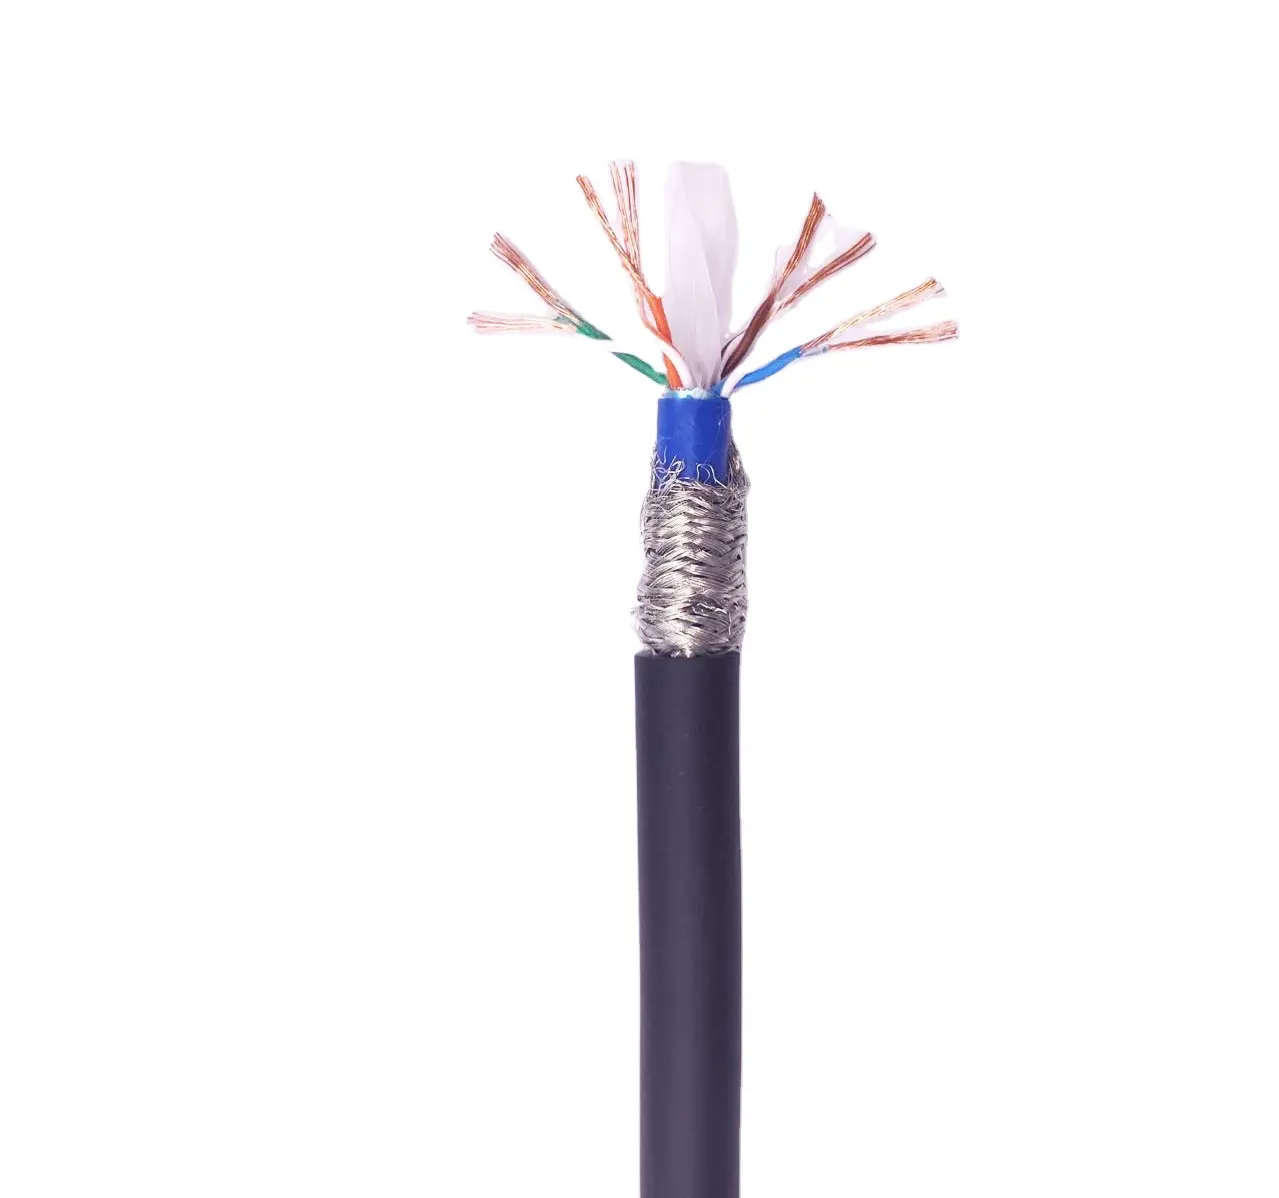 Preço do cabo de cobre puro de 4 mm do cabo de fio de alta temperatura CAT 6 por metro